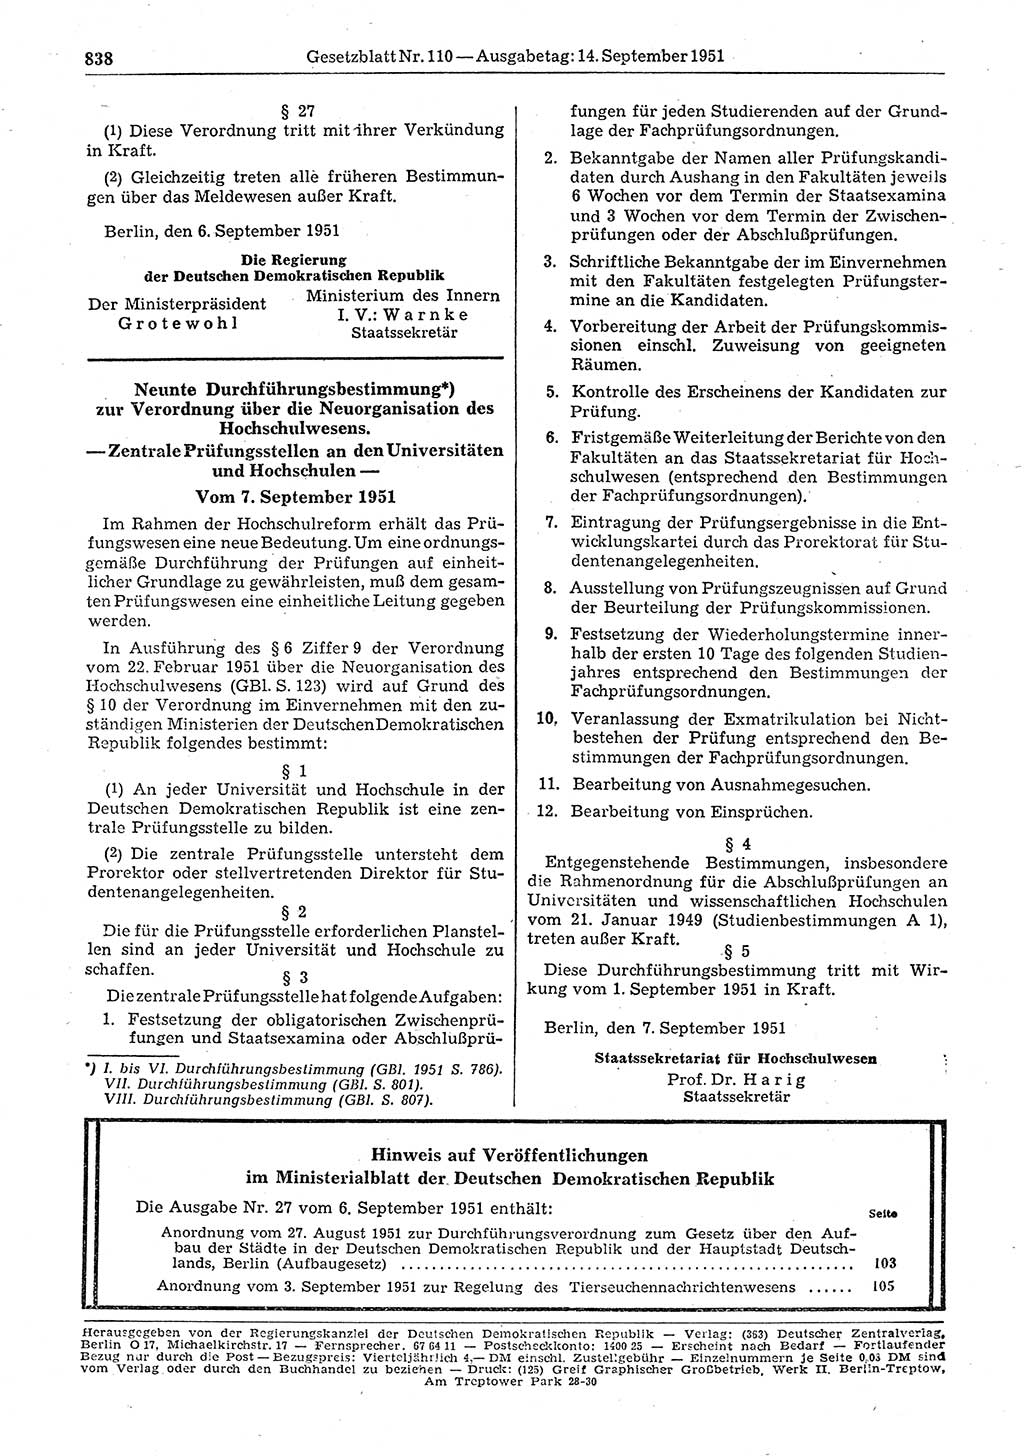 Gesetzblatt (GBl.) der Deutschen Demokratischen Republik (DDR) 1951, Seite 838 (GBl. DDR 1951, S. 838)